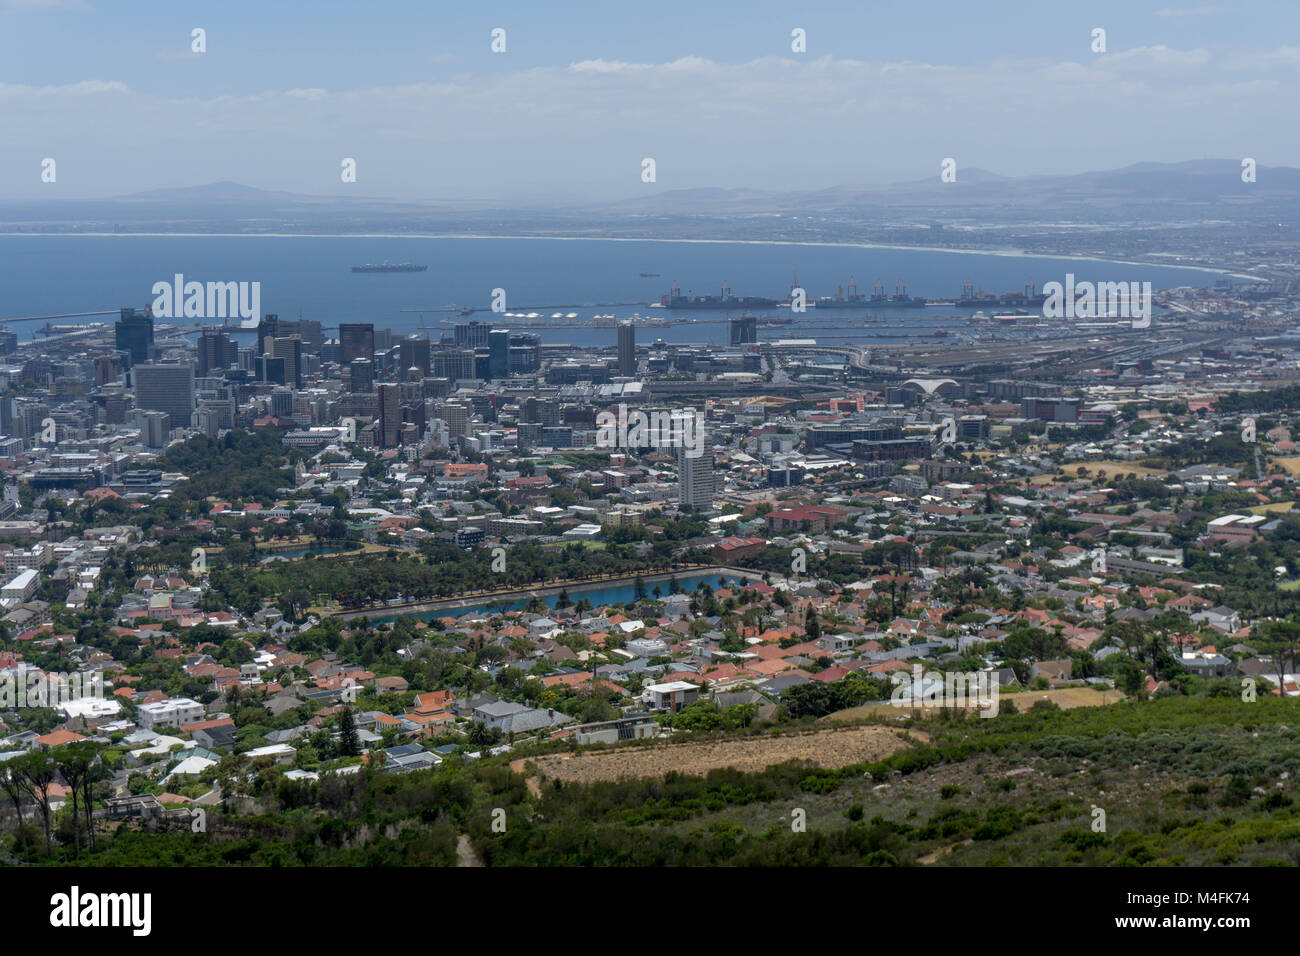 El 9 de febrero de 2018. Vista general del centro de Ciudad del Cabo, Sudáfrica. La región del Cabo Occidental se enfrenta a una grave crisis del agua después de años de sequía. Foto de stock